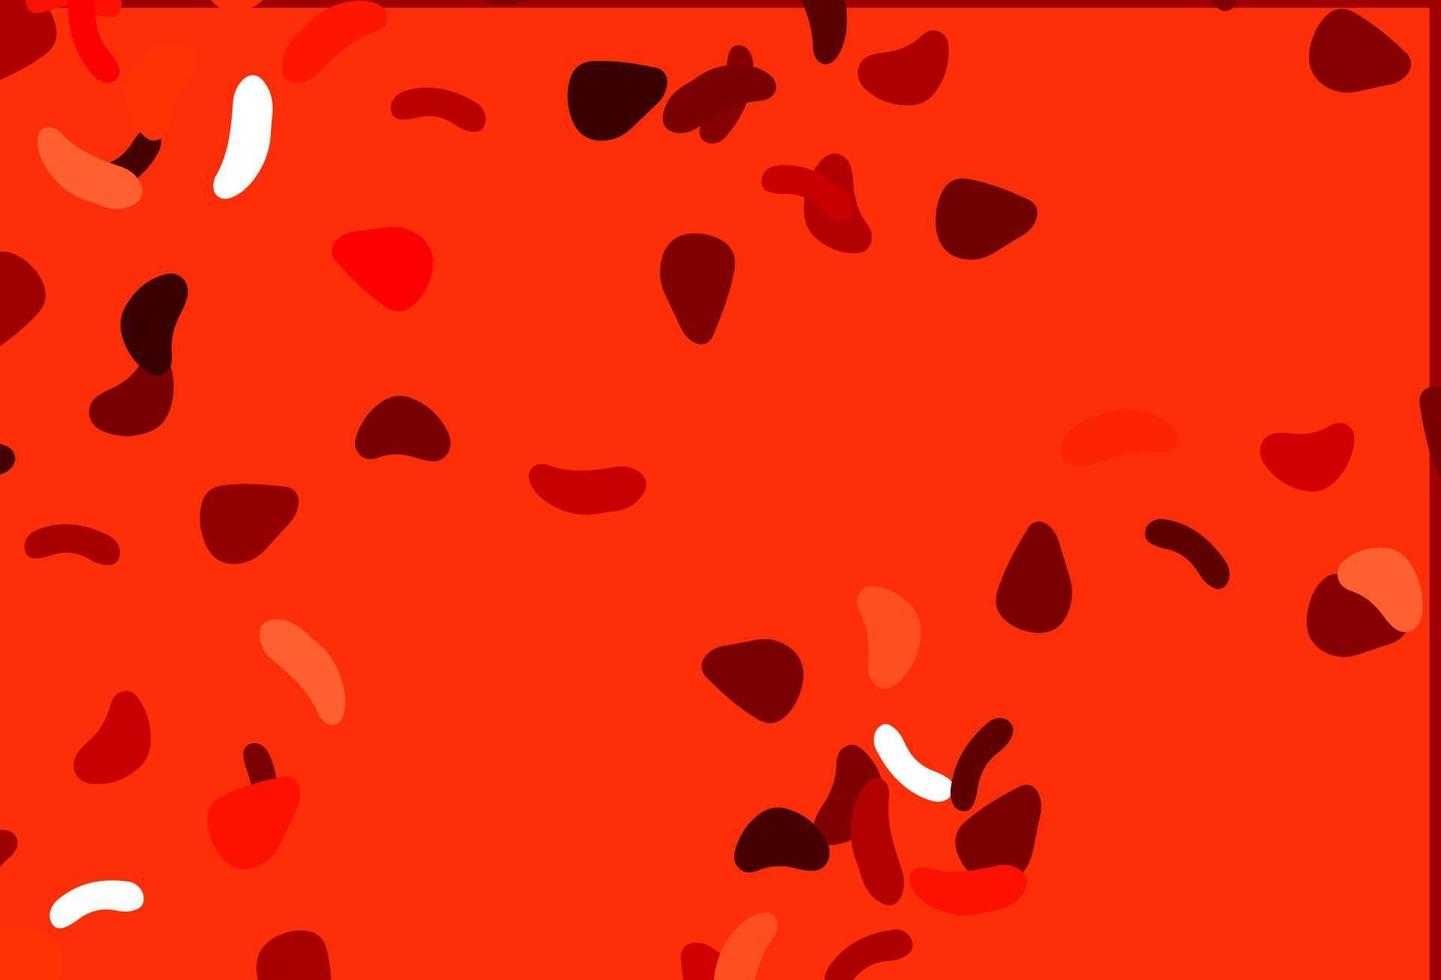 sfondo vettoriale rosso chiaro con forme astratte.